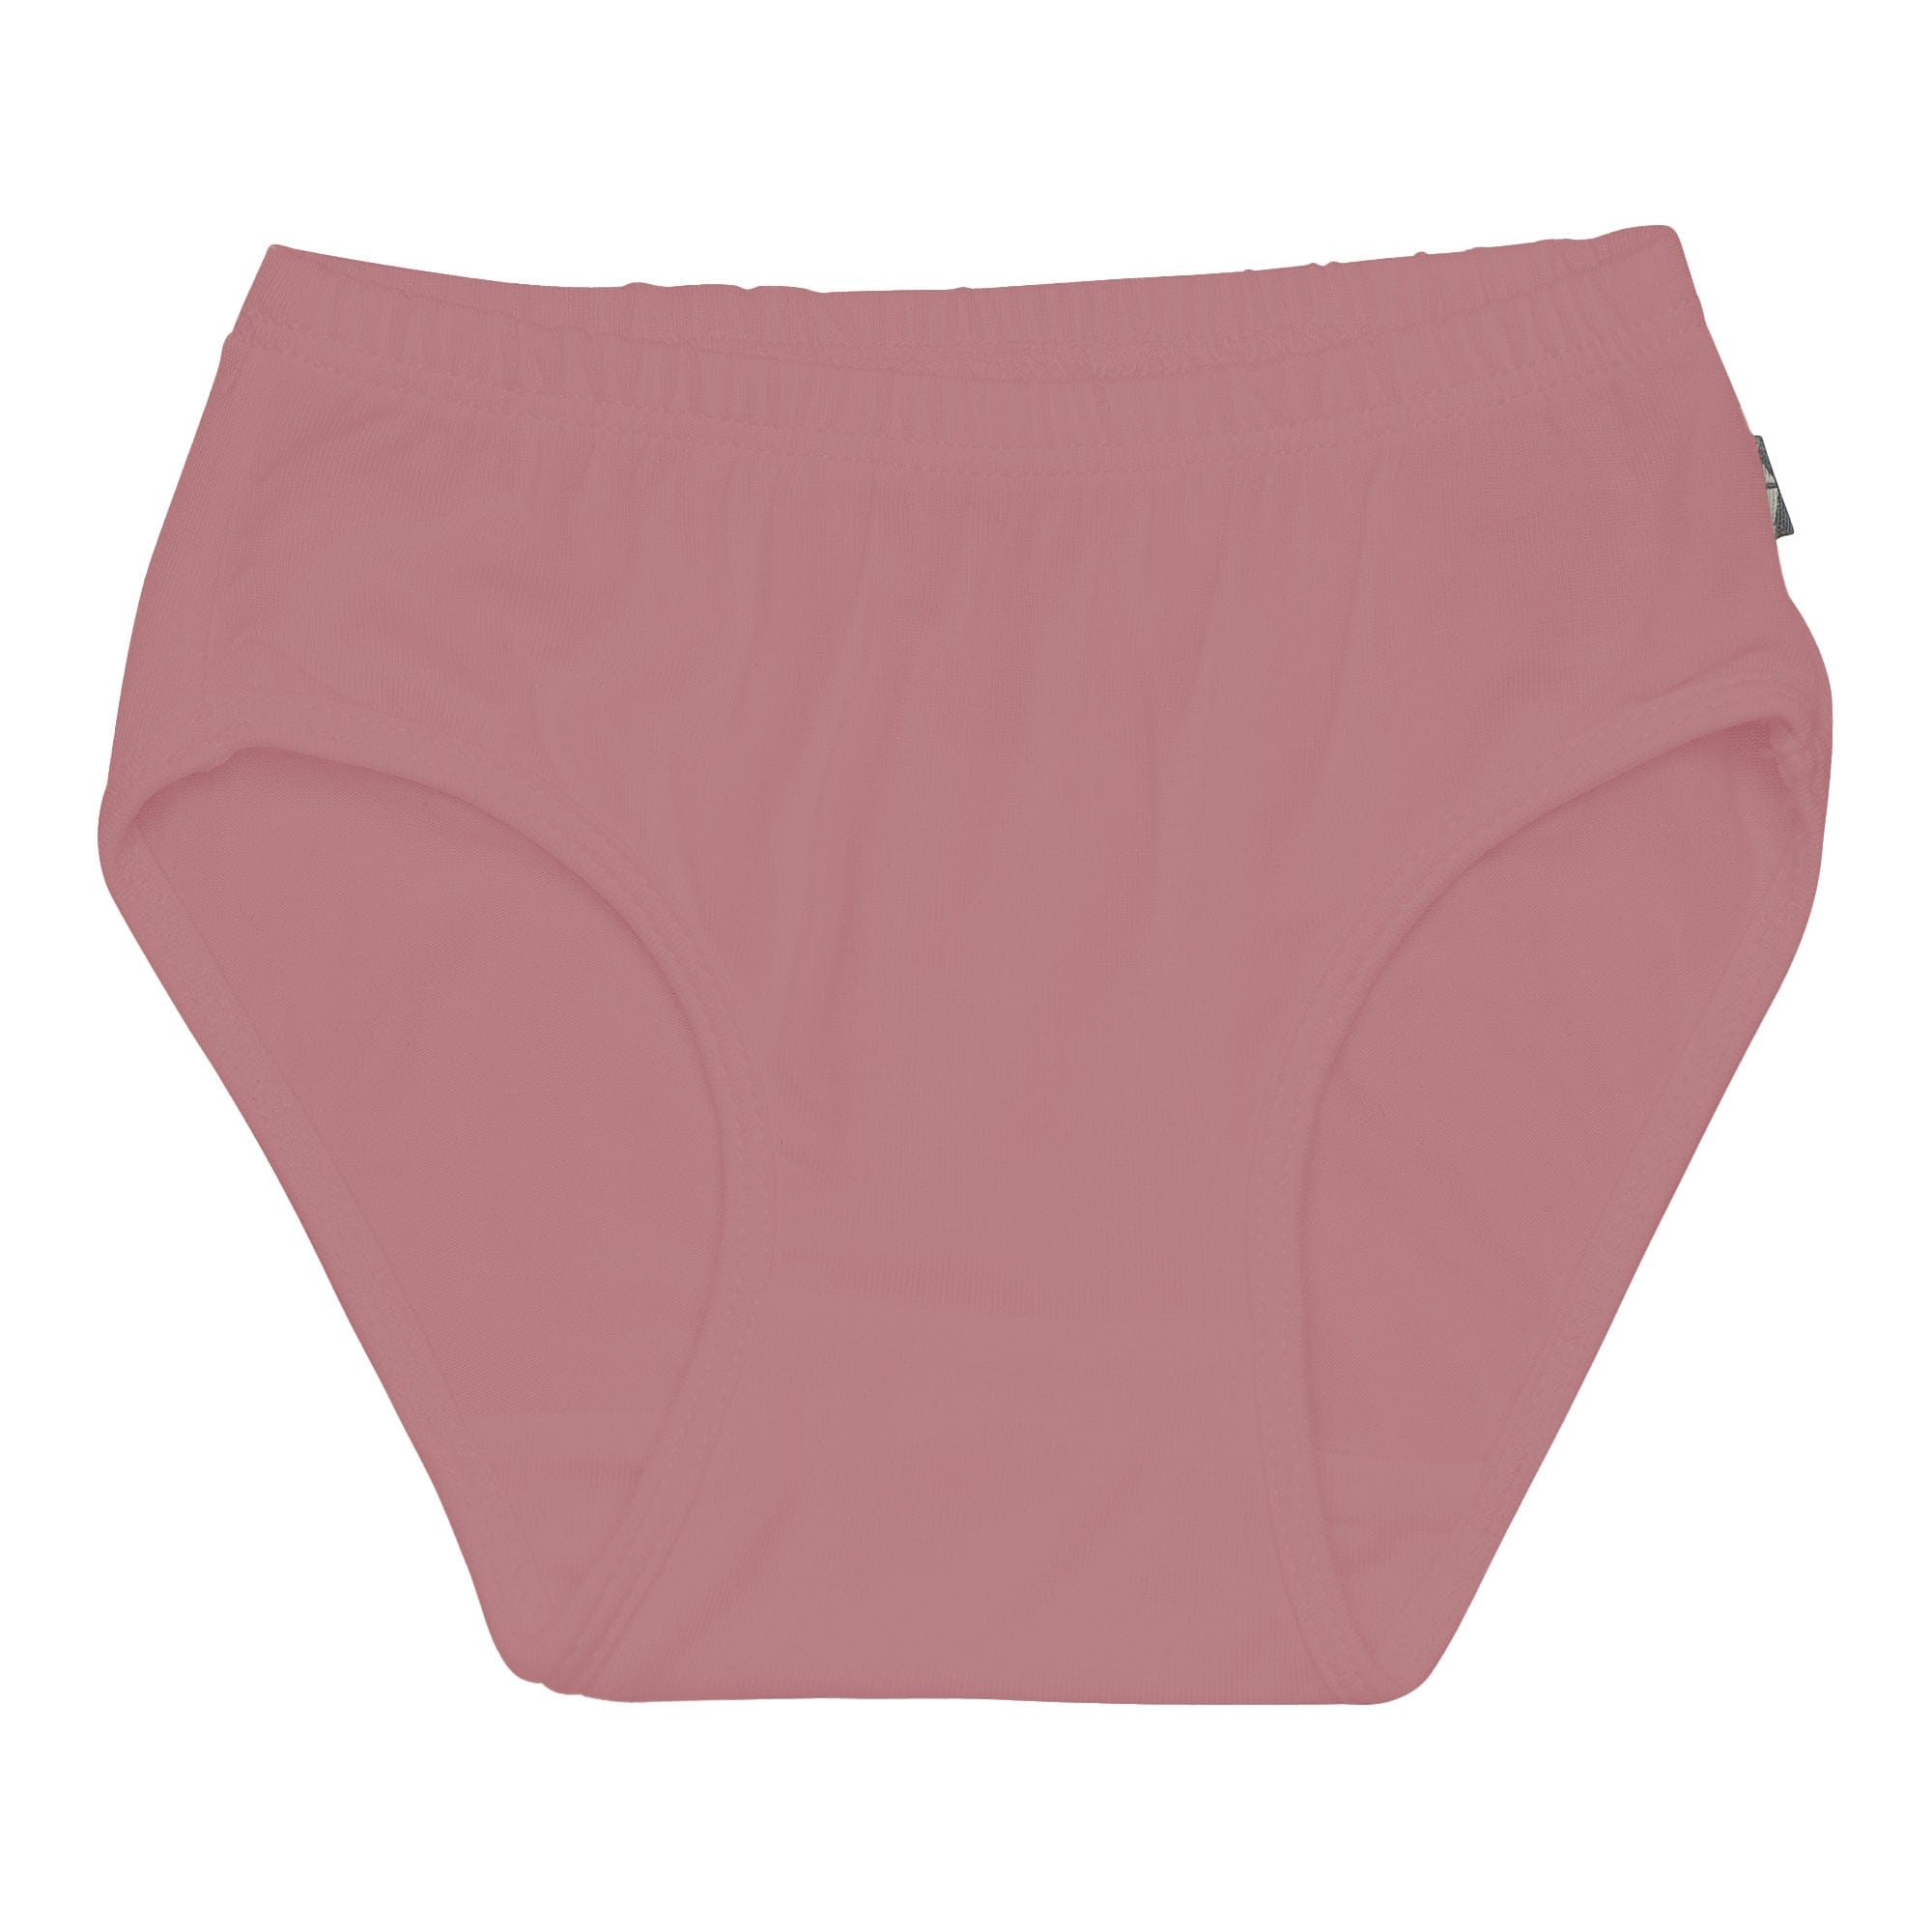 Kyte Baby Underwear Undies in Dusty Rose